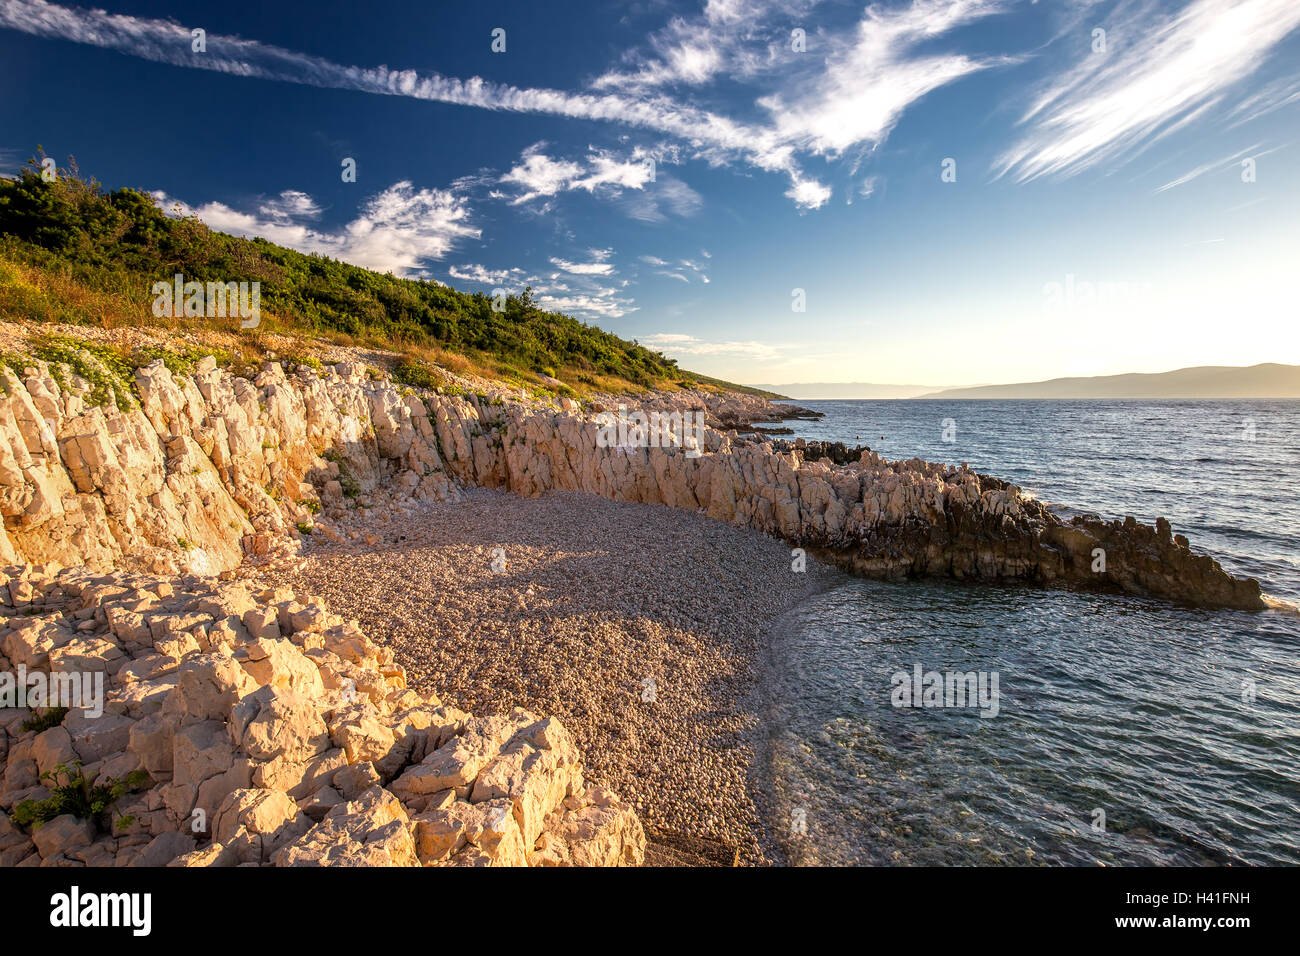 Sunrise over the rocky beach on the coast of Adriatic Sea, Istria, Croatia Stock Photo